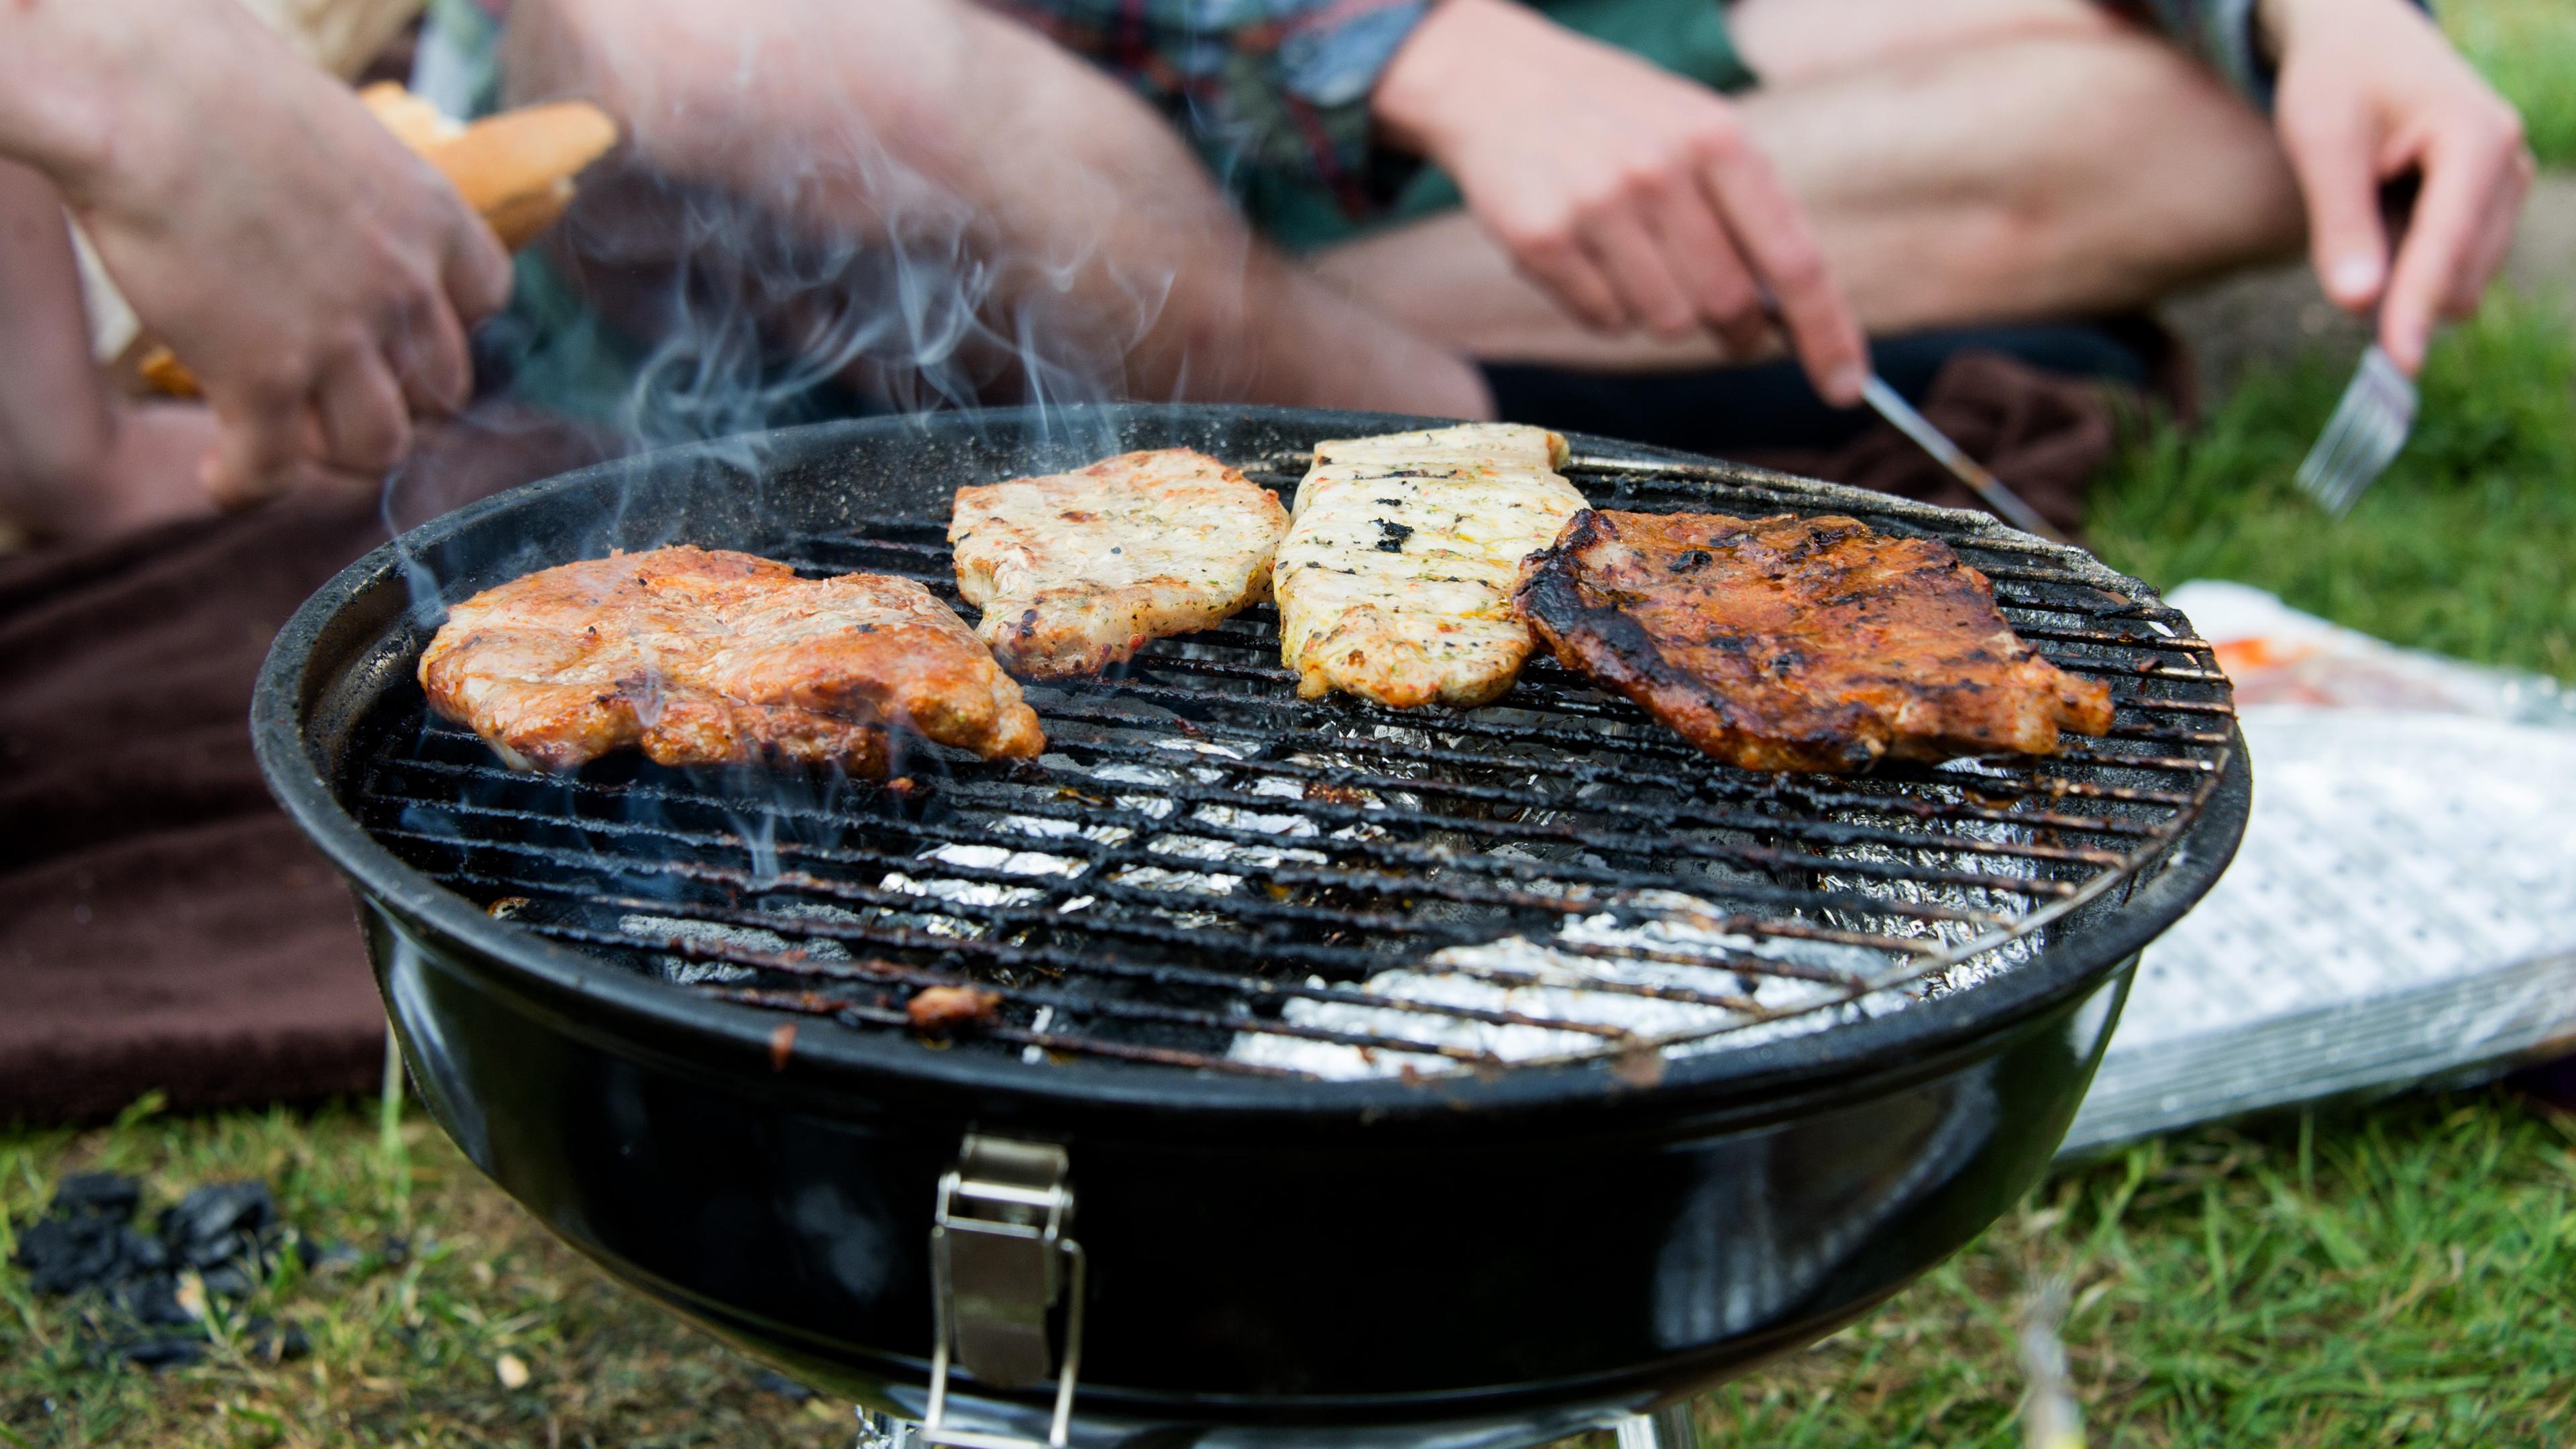 Das Bild zeigt Menschen, die in einem Park auf einem Grill Fleisch zubereiten